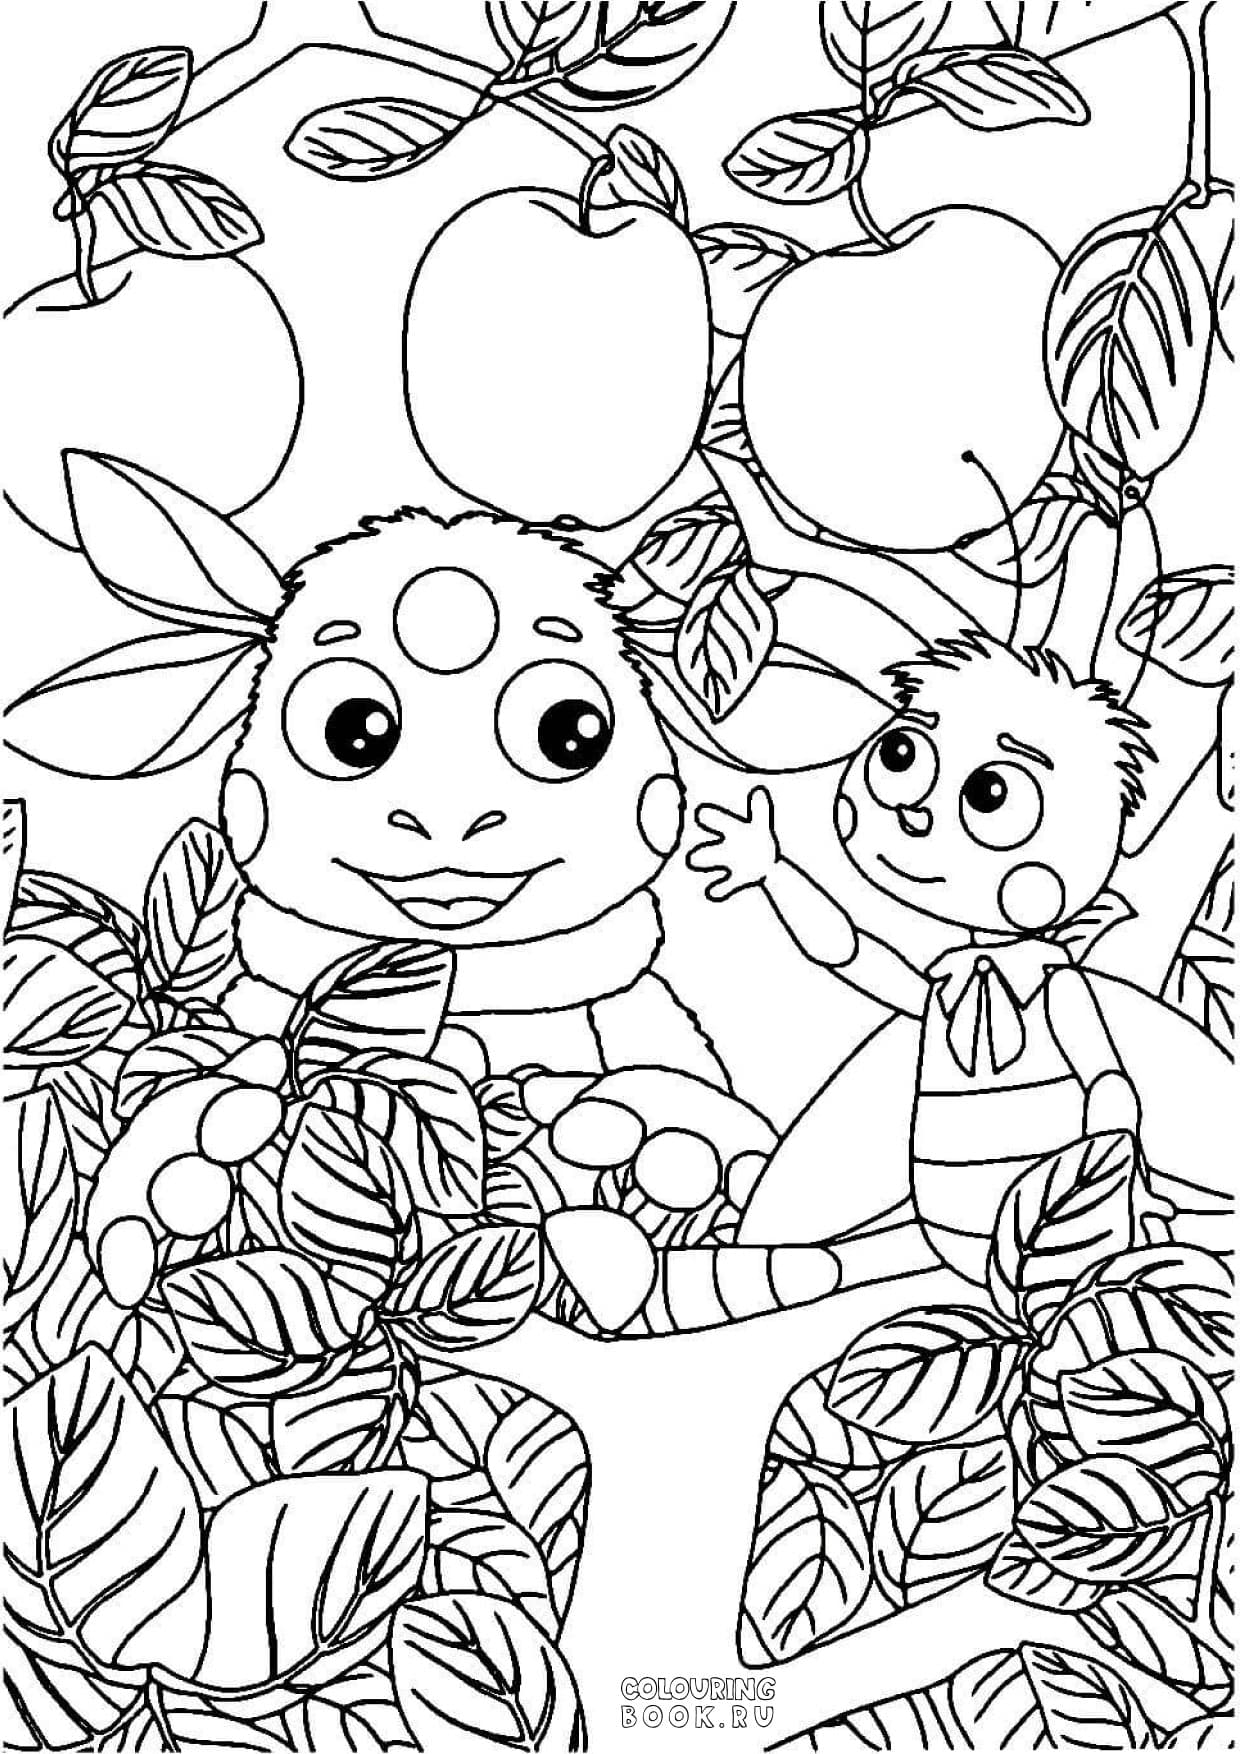 «Лунтик, Мила, Кузя и шкатулка» бесплатная раскраска для детей - мальчиков и девочек